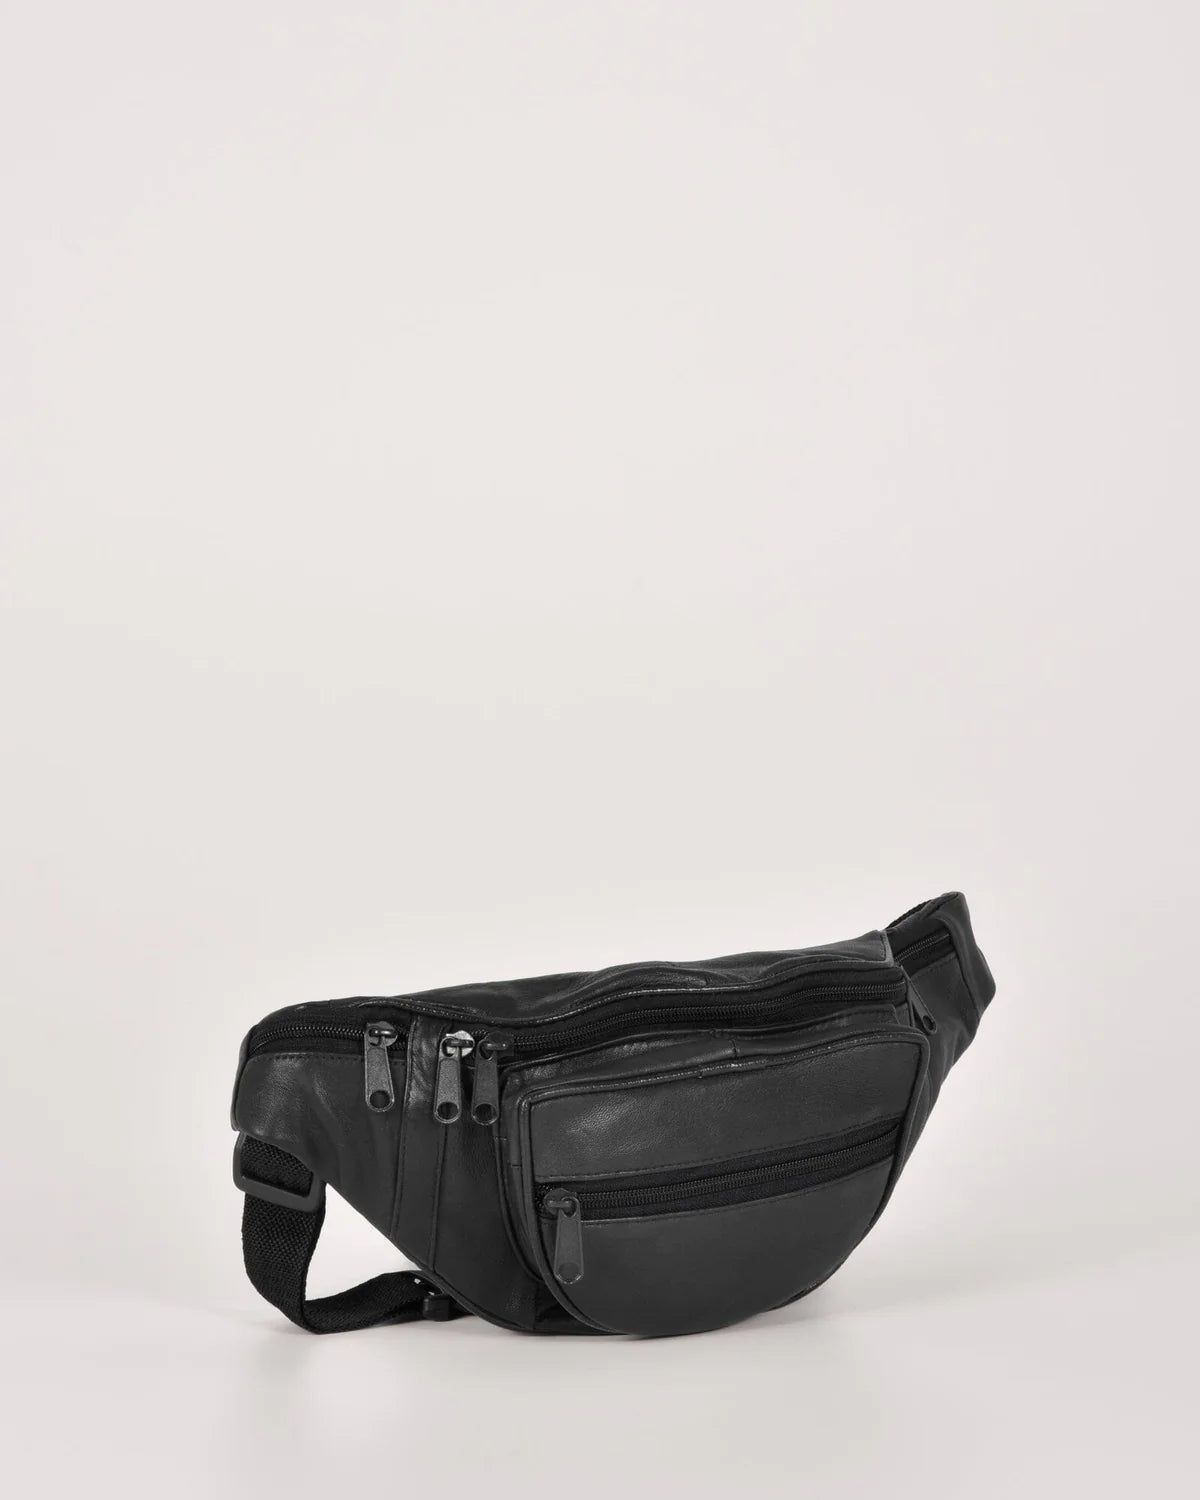 Cobb & Co - Leather Waist bag - rainbowbags